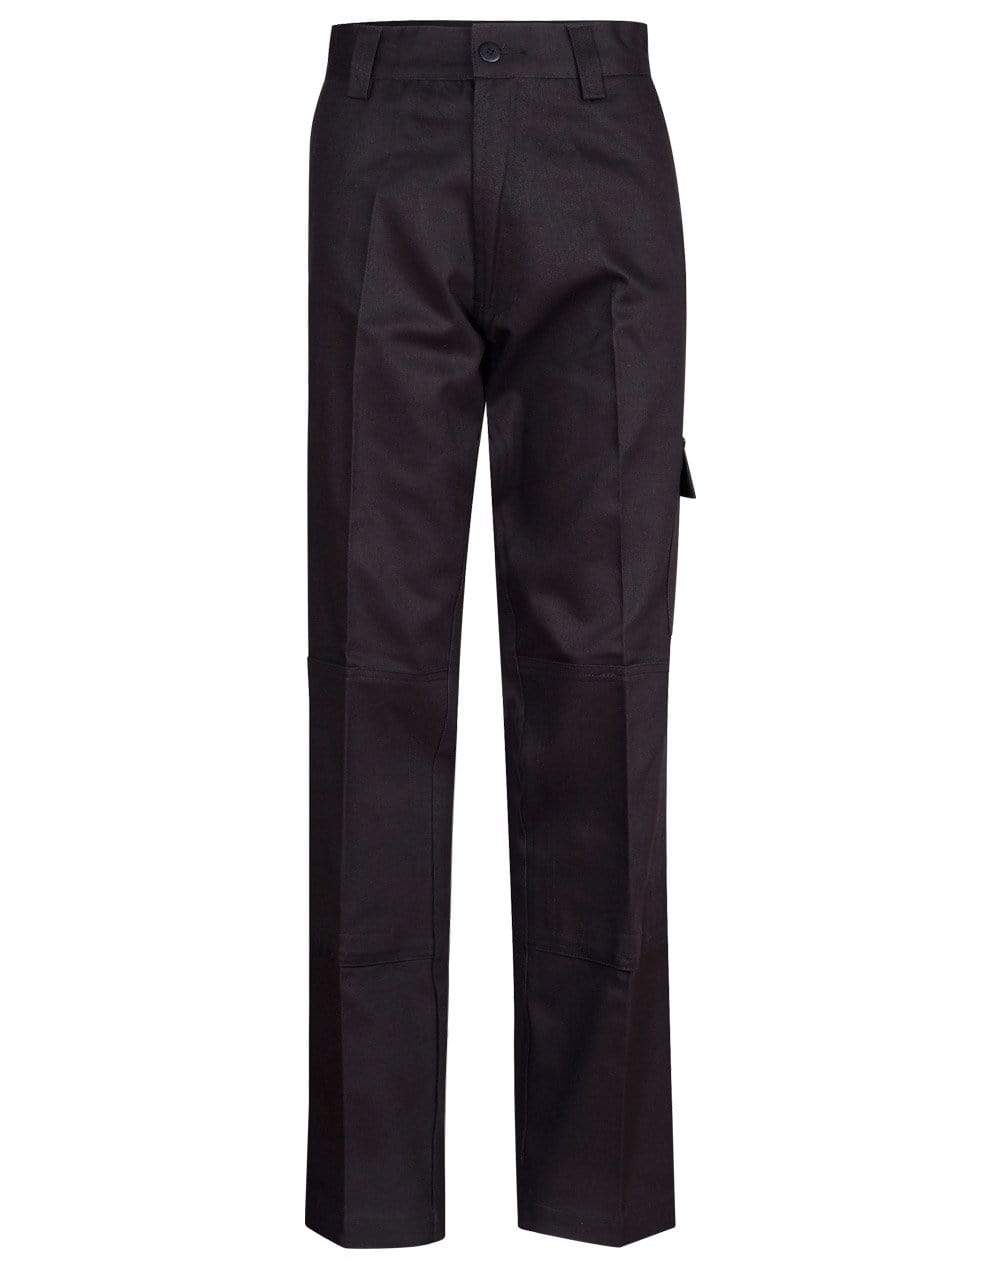 Australian Industrial Wear Work Wear Black / 77R Men's HEAVY COTTON DRILL CARGO PANTS WP03